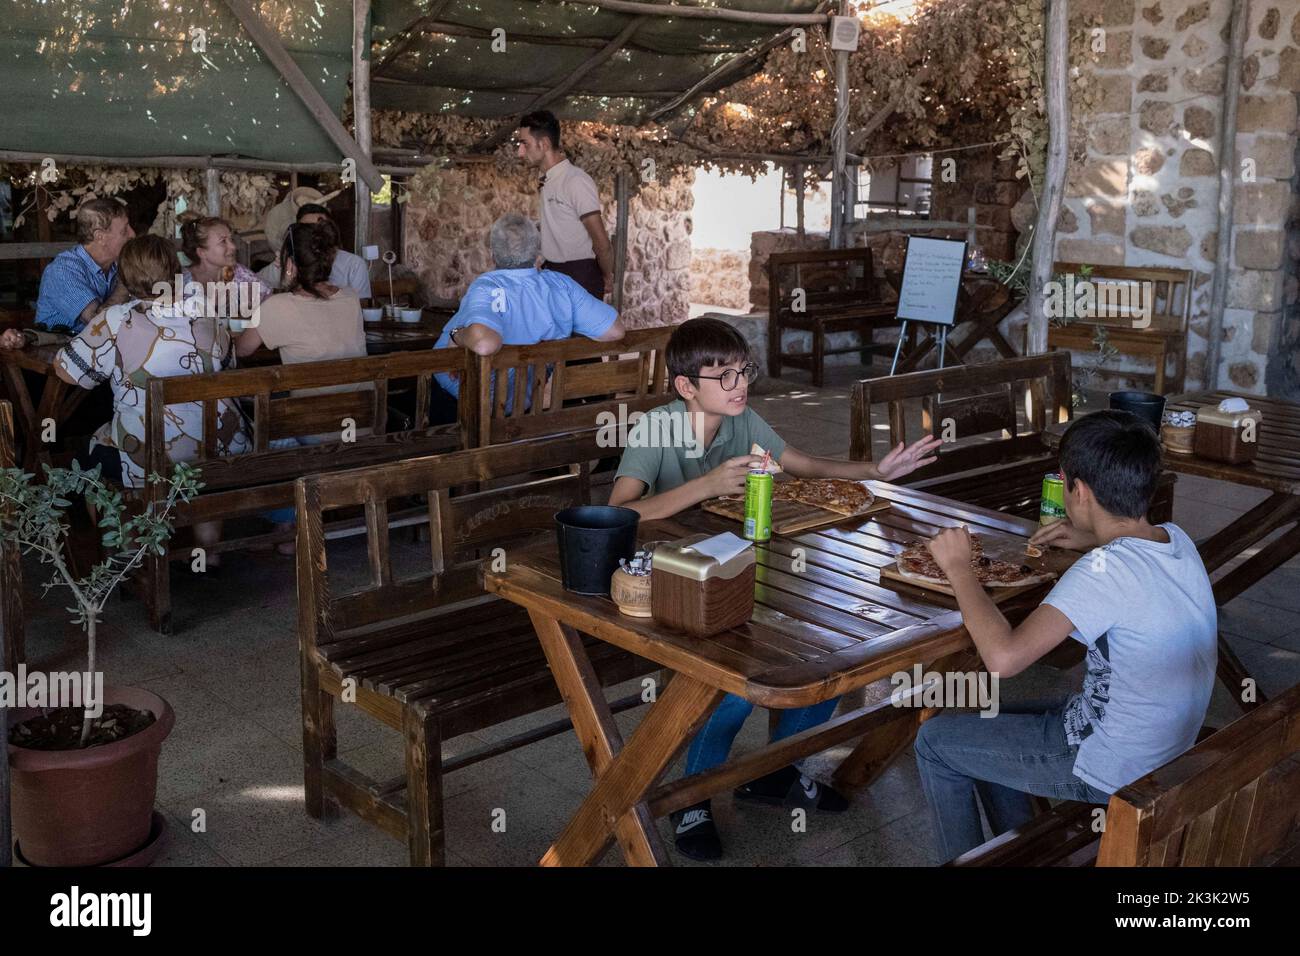 Les enfants avec leurs familles dîneront au Kafro's Pizza, Mardin. Il y a une pizzeria appelée Kafro's Pizza dans le village d'Elbegendi dans le quartier Midyat de Mardin. La pizzeria tire son nom du village d'Elbegendi, où vivent les Assyriens, sur le mont Bagok. La pizzeria, dont le propriétaire et le personnel sont Assyriens, accueille des dizaines de clients chaque jour en raison de son emplacement dans le village et de ses délicieuses pizzas. Nail Demir, le propriétaire du lieu, a appris à faire de la pizza tout en vivant en Europe et a décidé d'ouvrir Kafro's Pizza il y a 10 ans dans le village où il est né. Banque D'Images